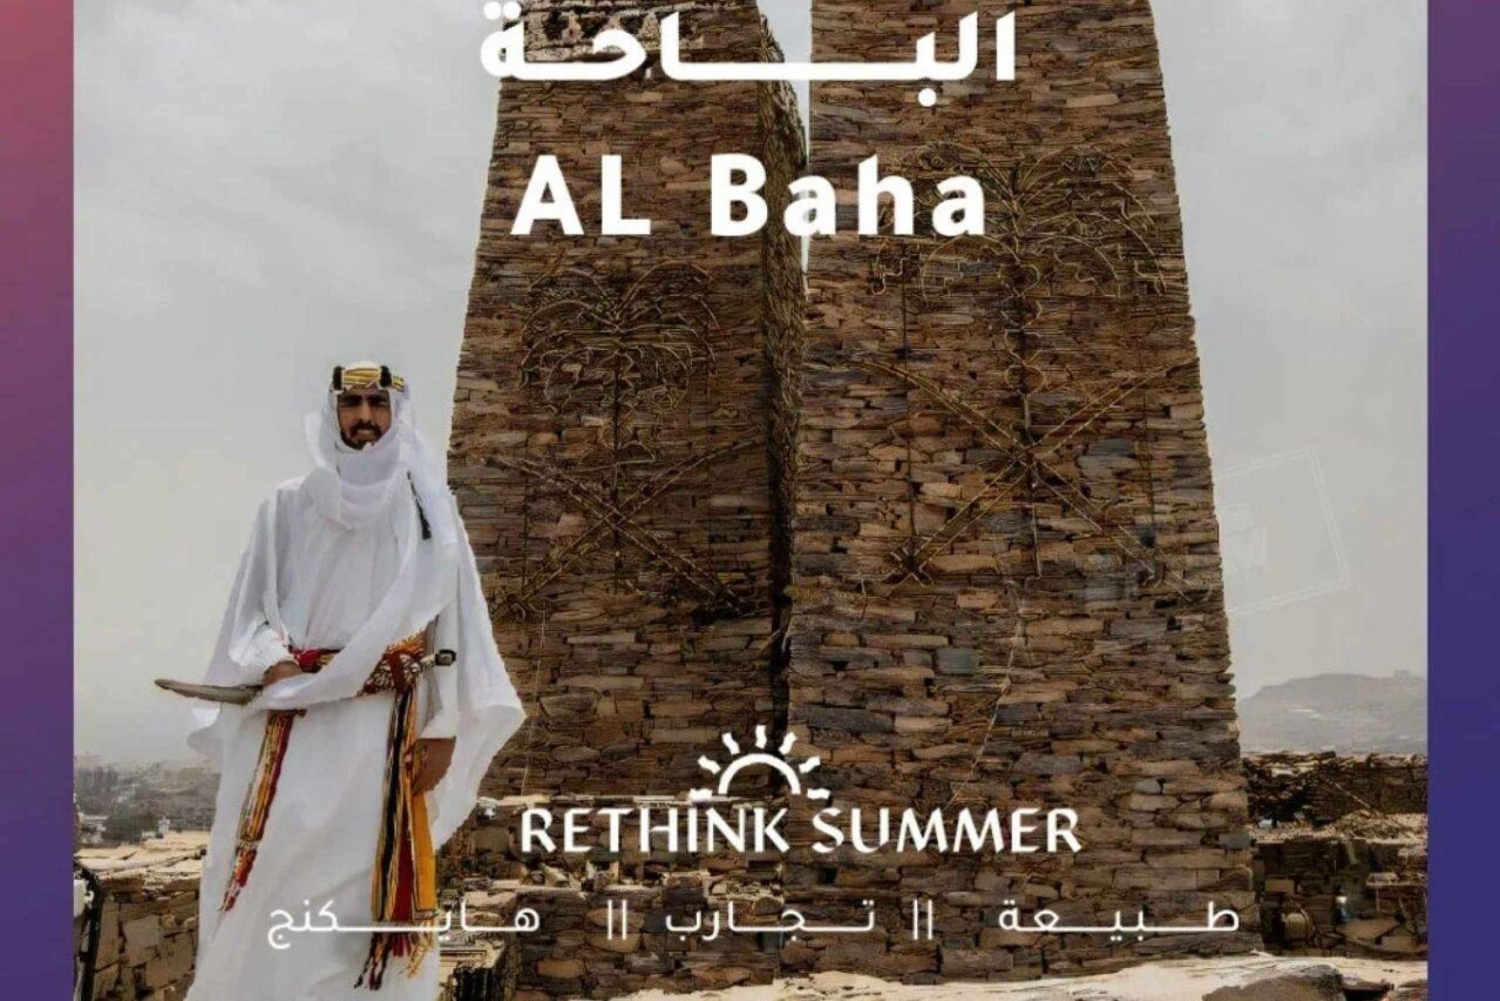 Escursione di 3 giorni ad Al Baha